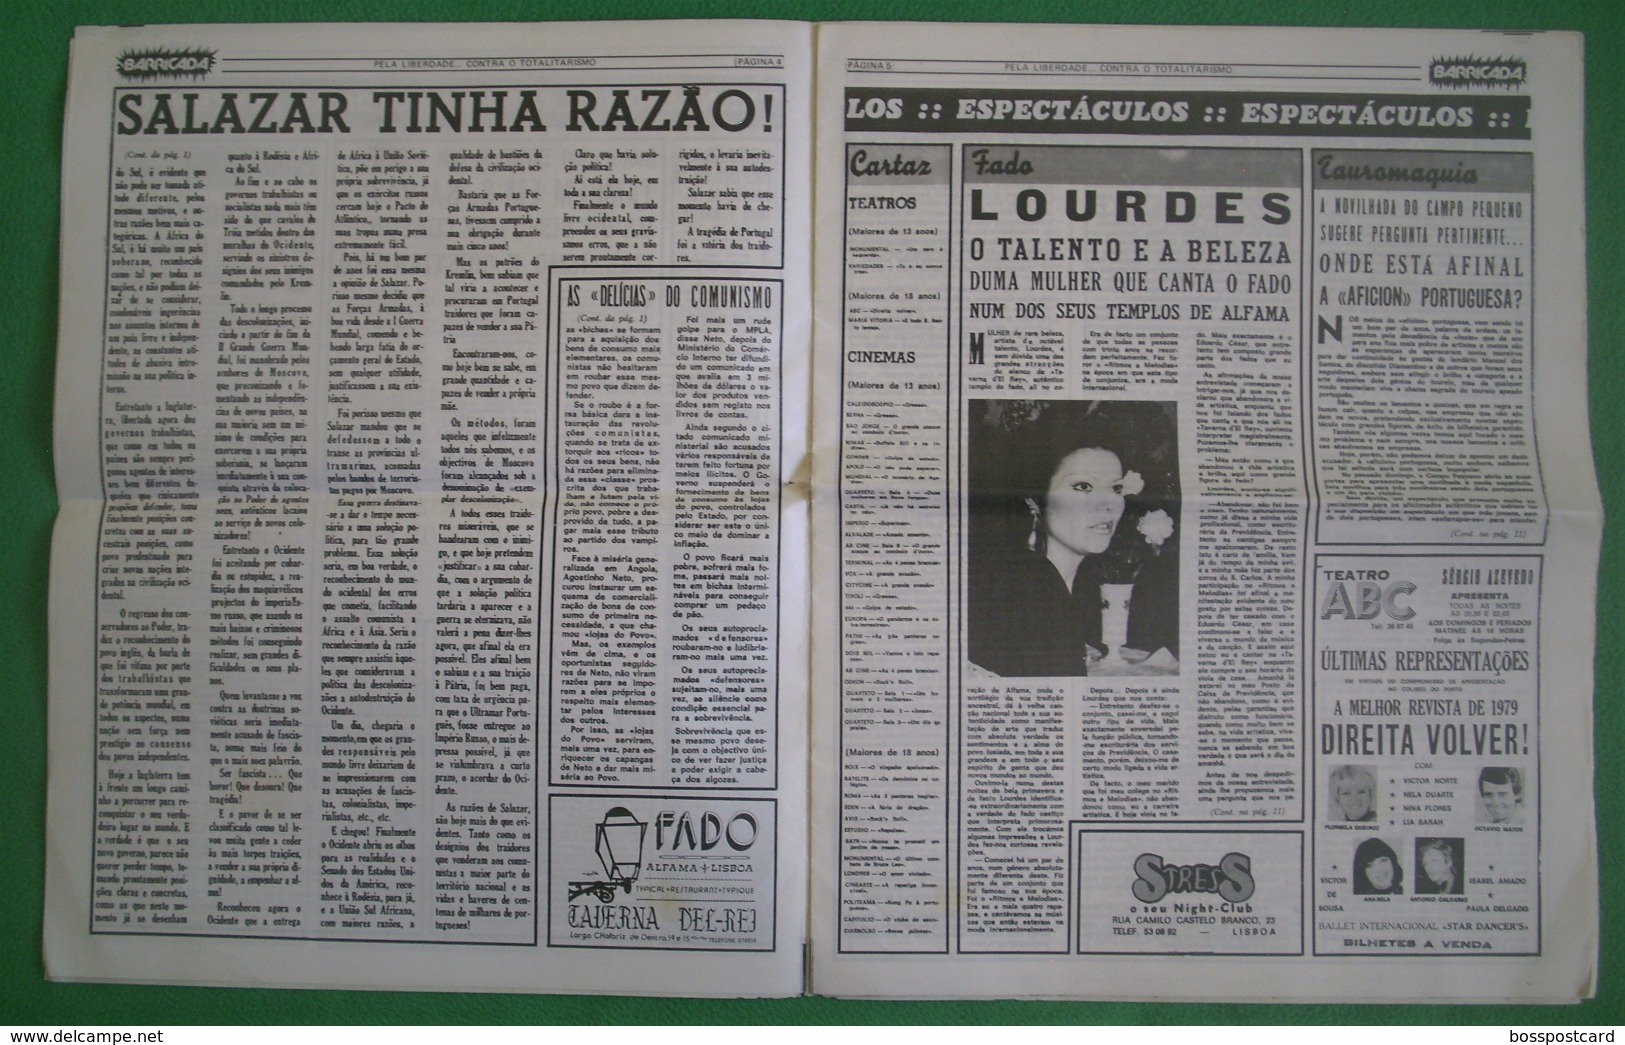 Lisboa - Portugal - Jornal Barricada Nº 185 De Maio De 1979 - República Portuguesa  Imprensa - 25 De Abril - PREC - Informations Générales